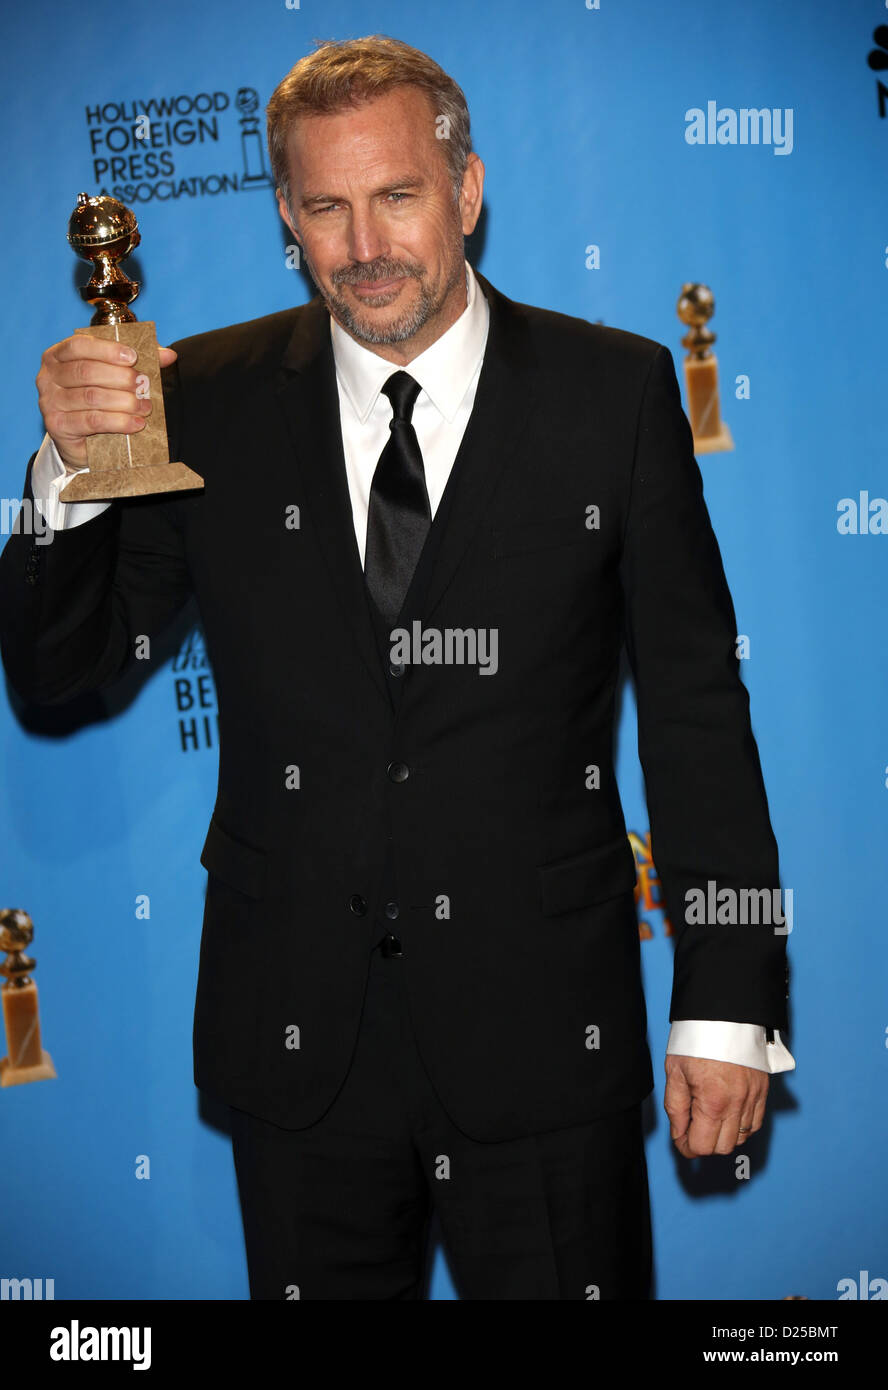 US-Schauspieler Kevin Costner posiert in der Foto-Presseraum des der 70. Annual Golden Globe Awards von der Hollywood Foreign Press Association, HFPA, im Hotel Beverly Hilton in Beverly Hills, USA, am 13. Januar 2013 vorgestellt. Foto: Hubert Boesl Stockfoto